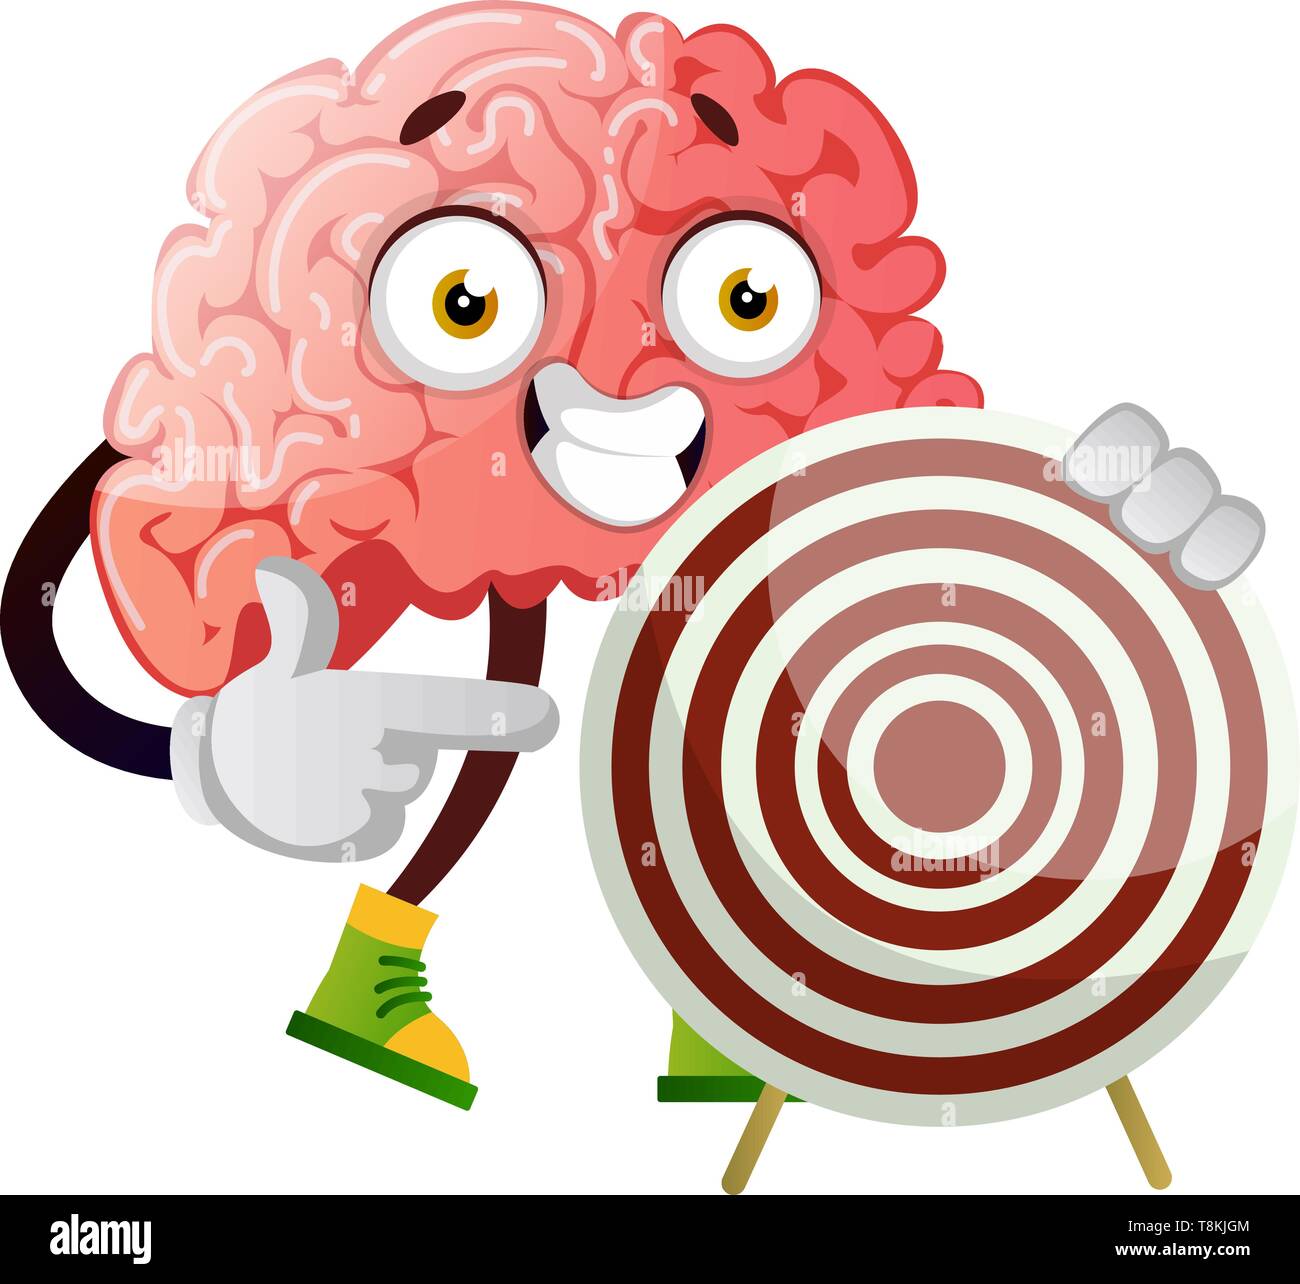 Gehirn Holding ein Ziel, Illustration, Vektor auf weißem Hintergrund. Stock Vektor